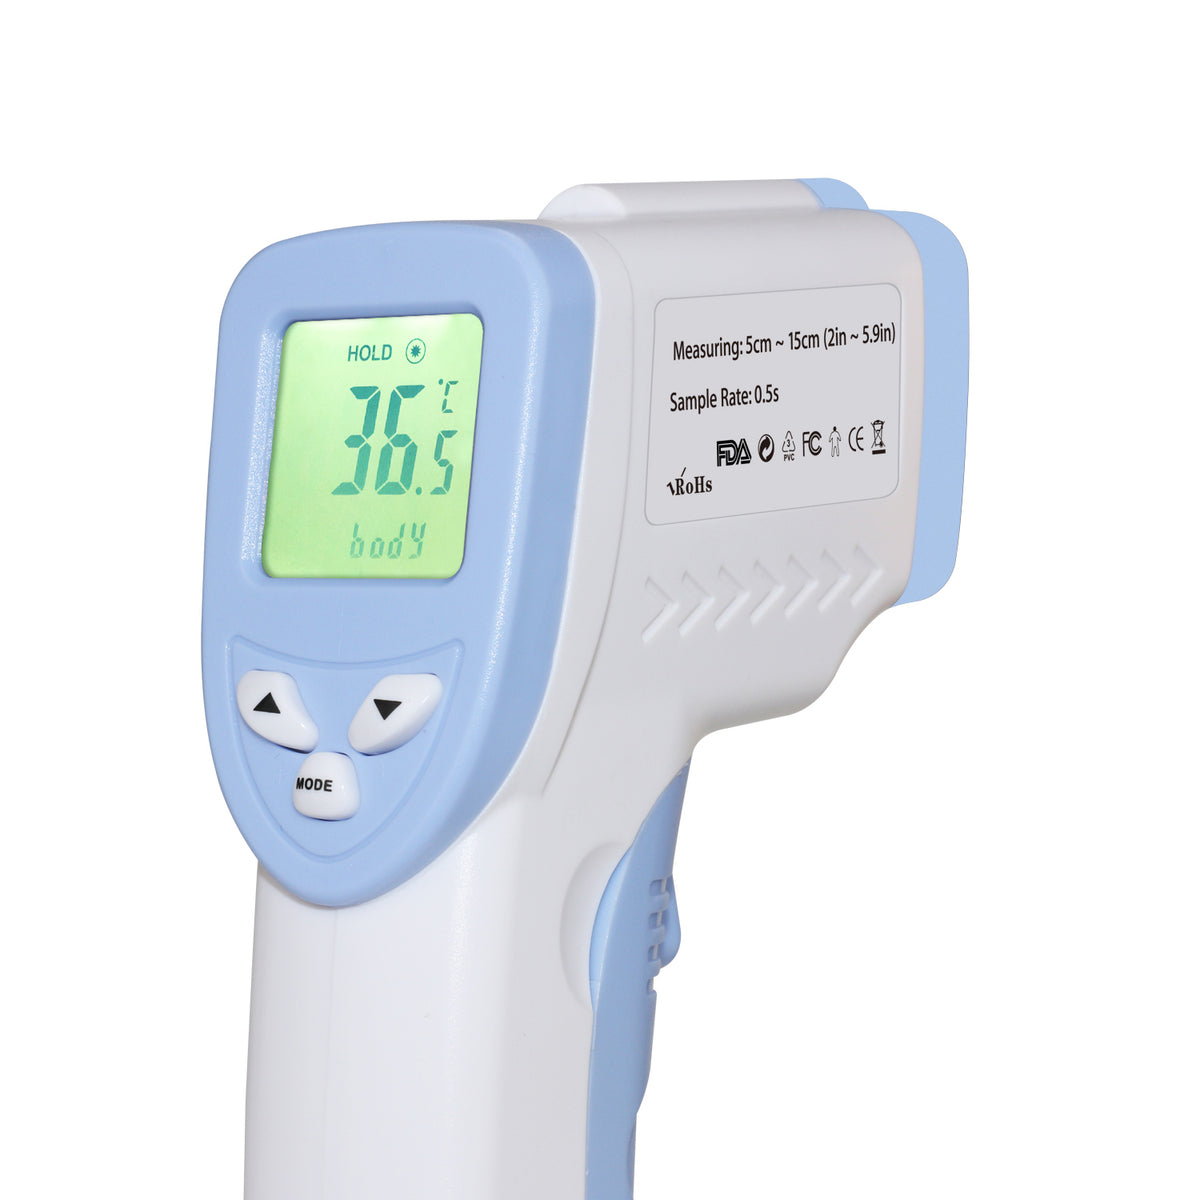 LERVING 非接触 体温計 赤外線体温計 おでこ体温計 正確 赤ちゃん 新生児 子供 大人 スピード検温 平均1